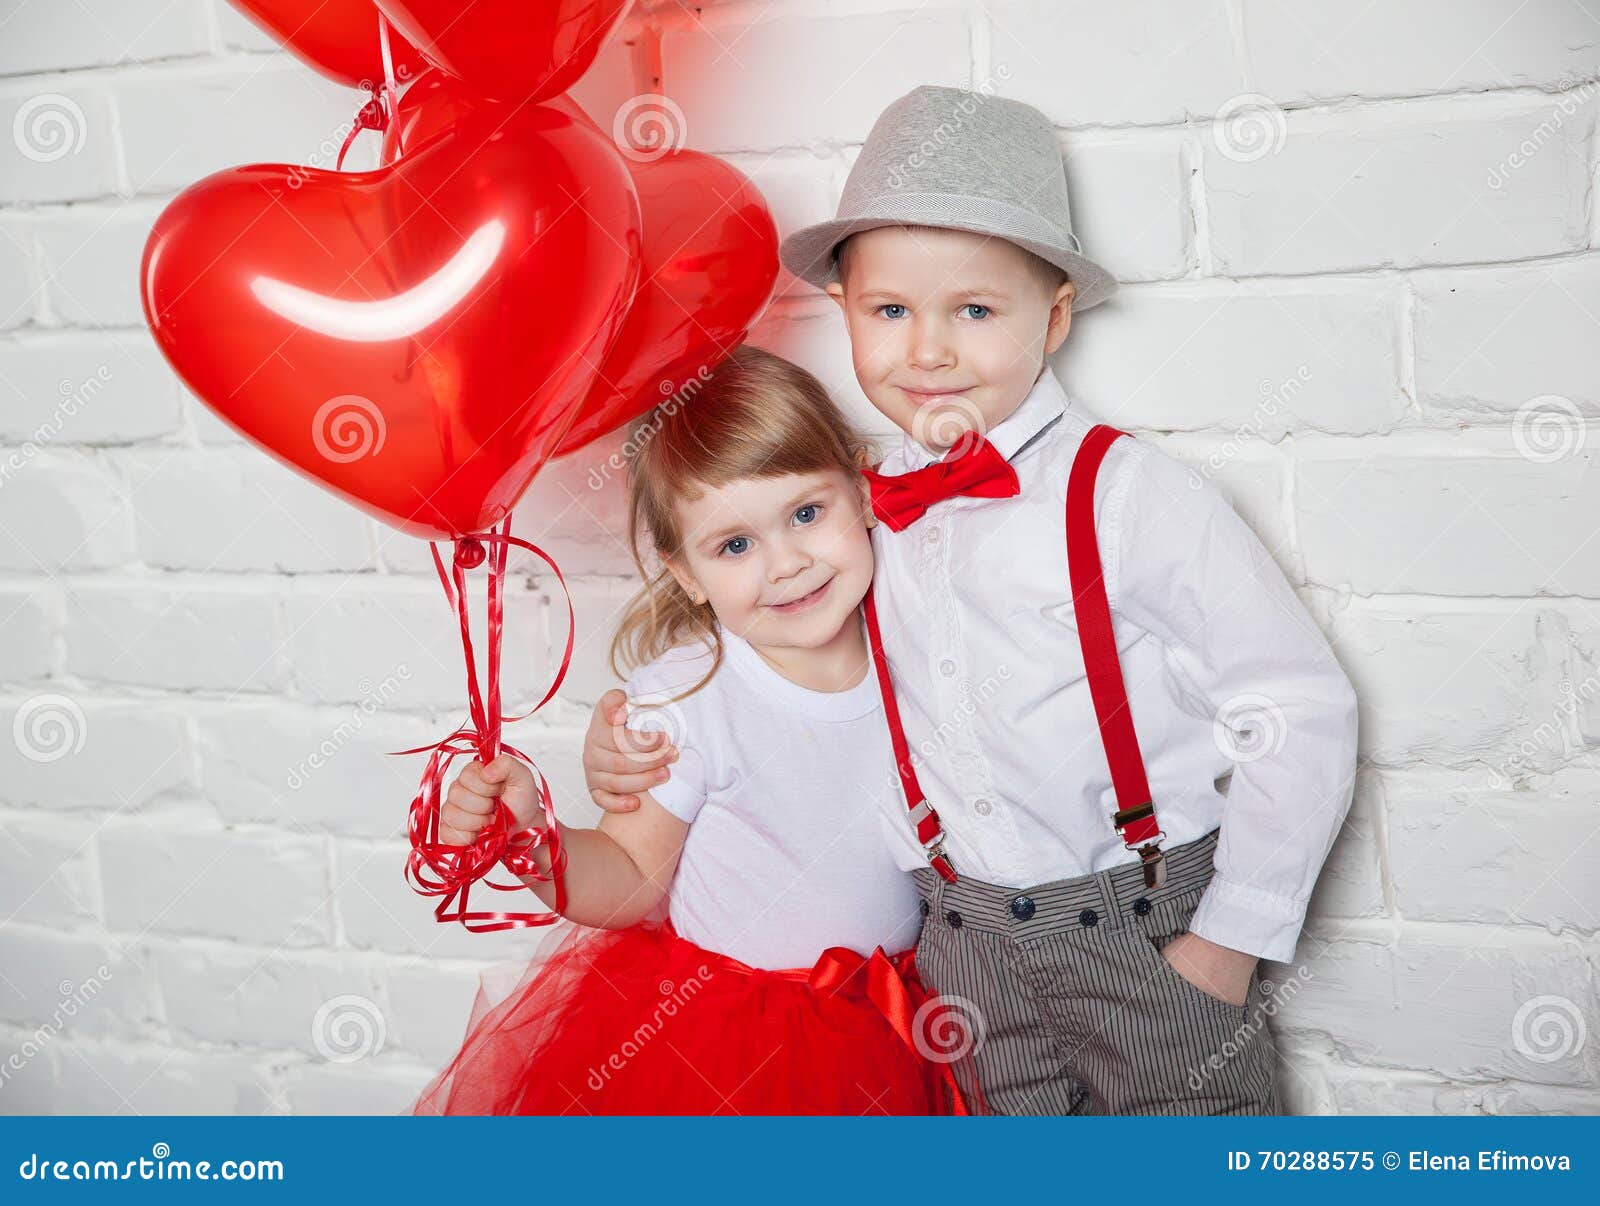 Categoría «Día de san valentín con globos» de imágenes, fotos de stock e  ilustraciones libres de regalías